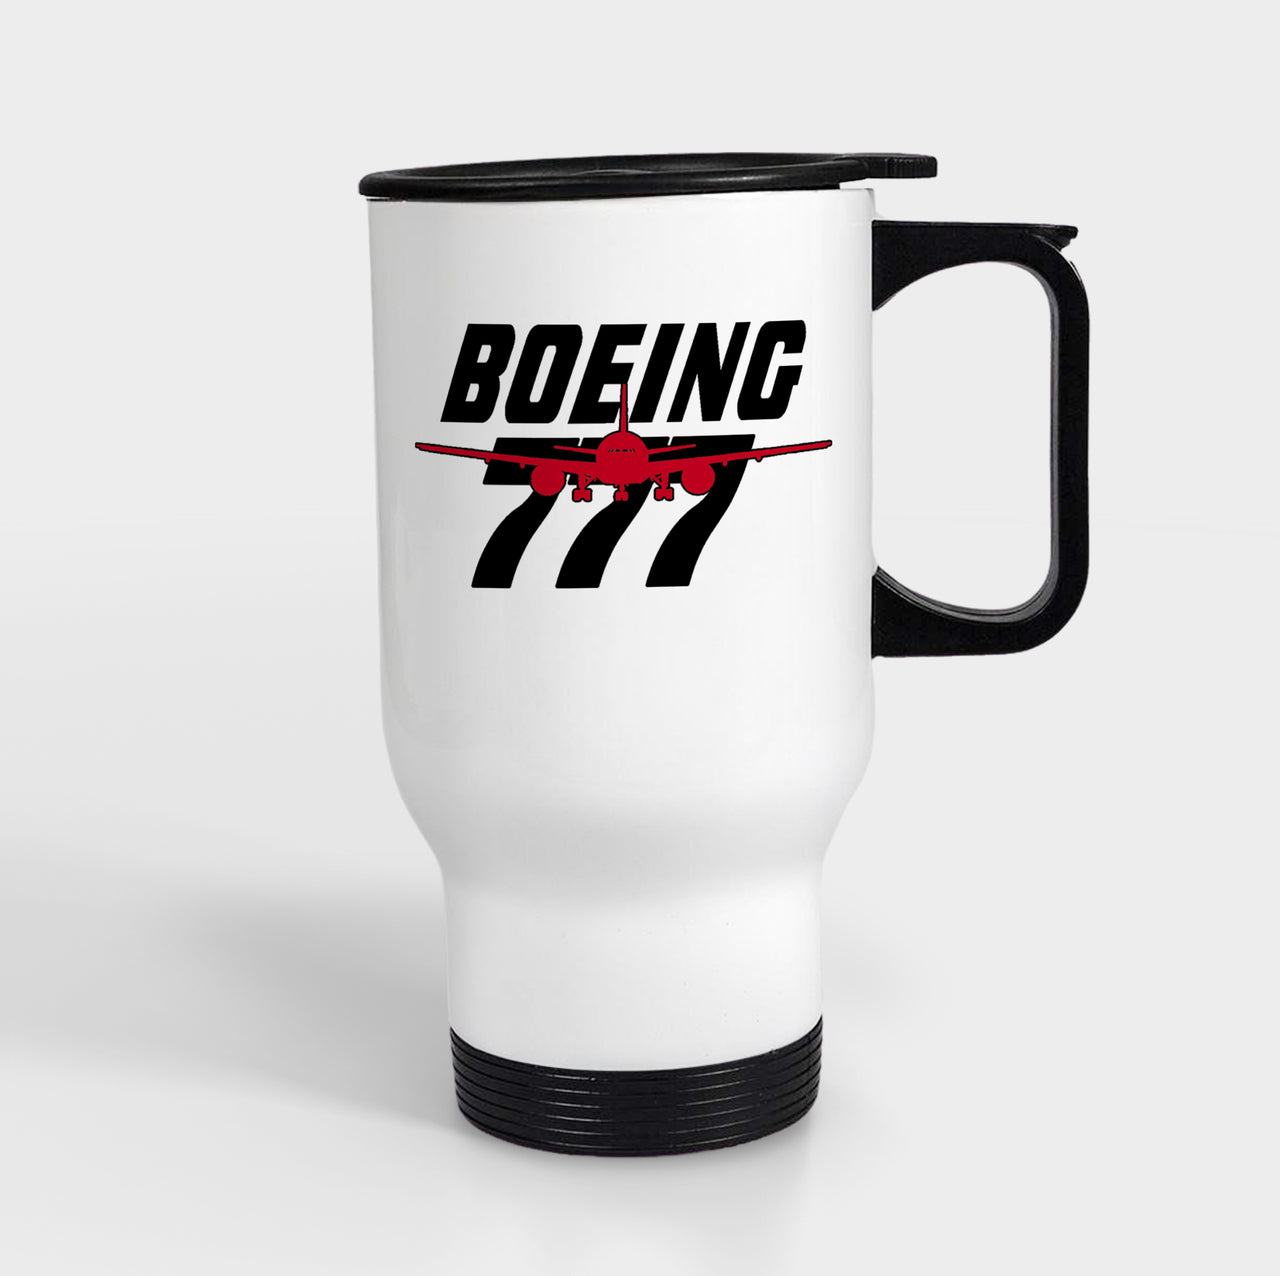 Amazing Boeing 777 Designed Travel Mugs (With Holder)